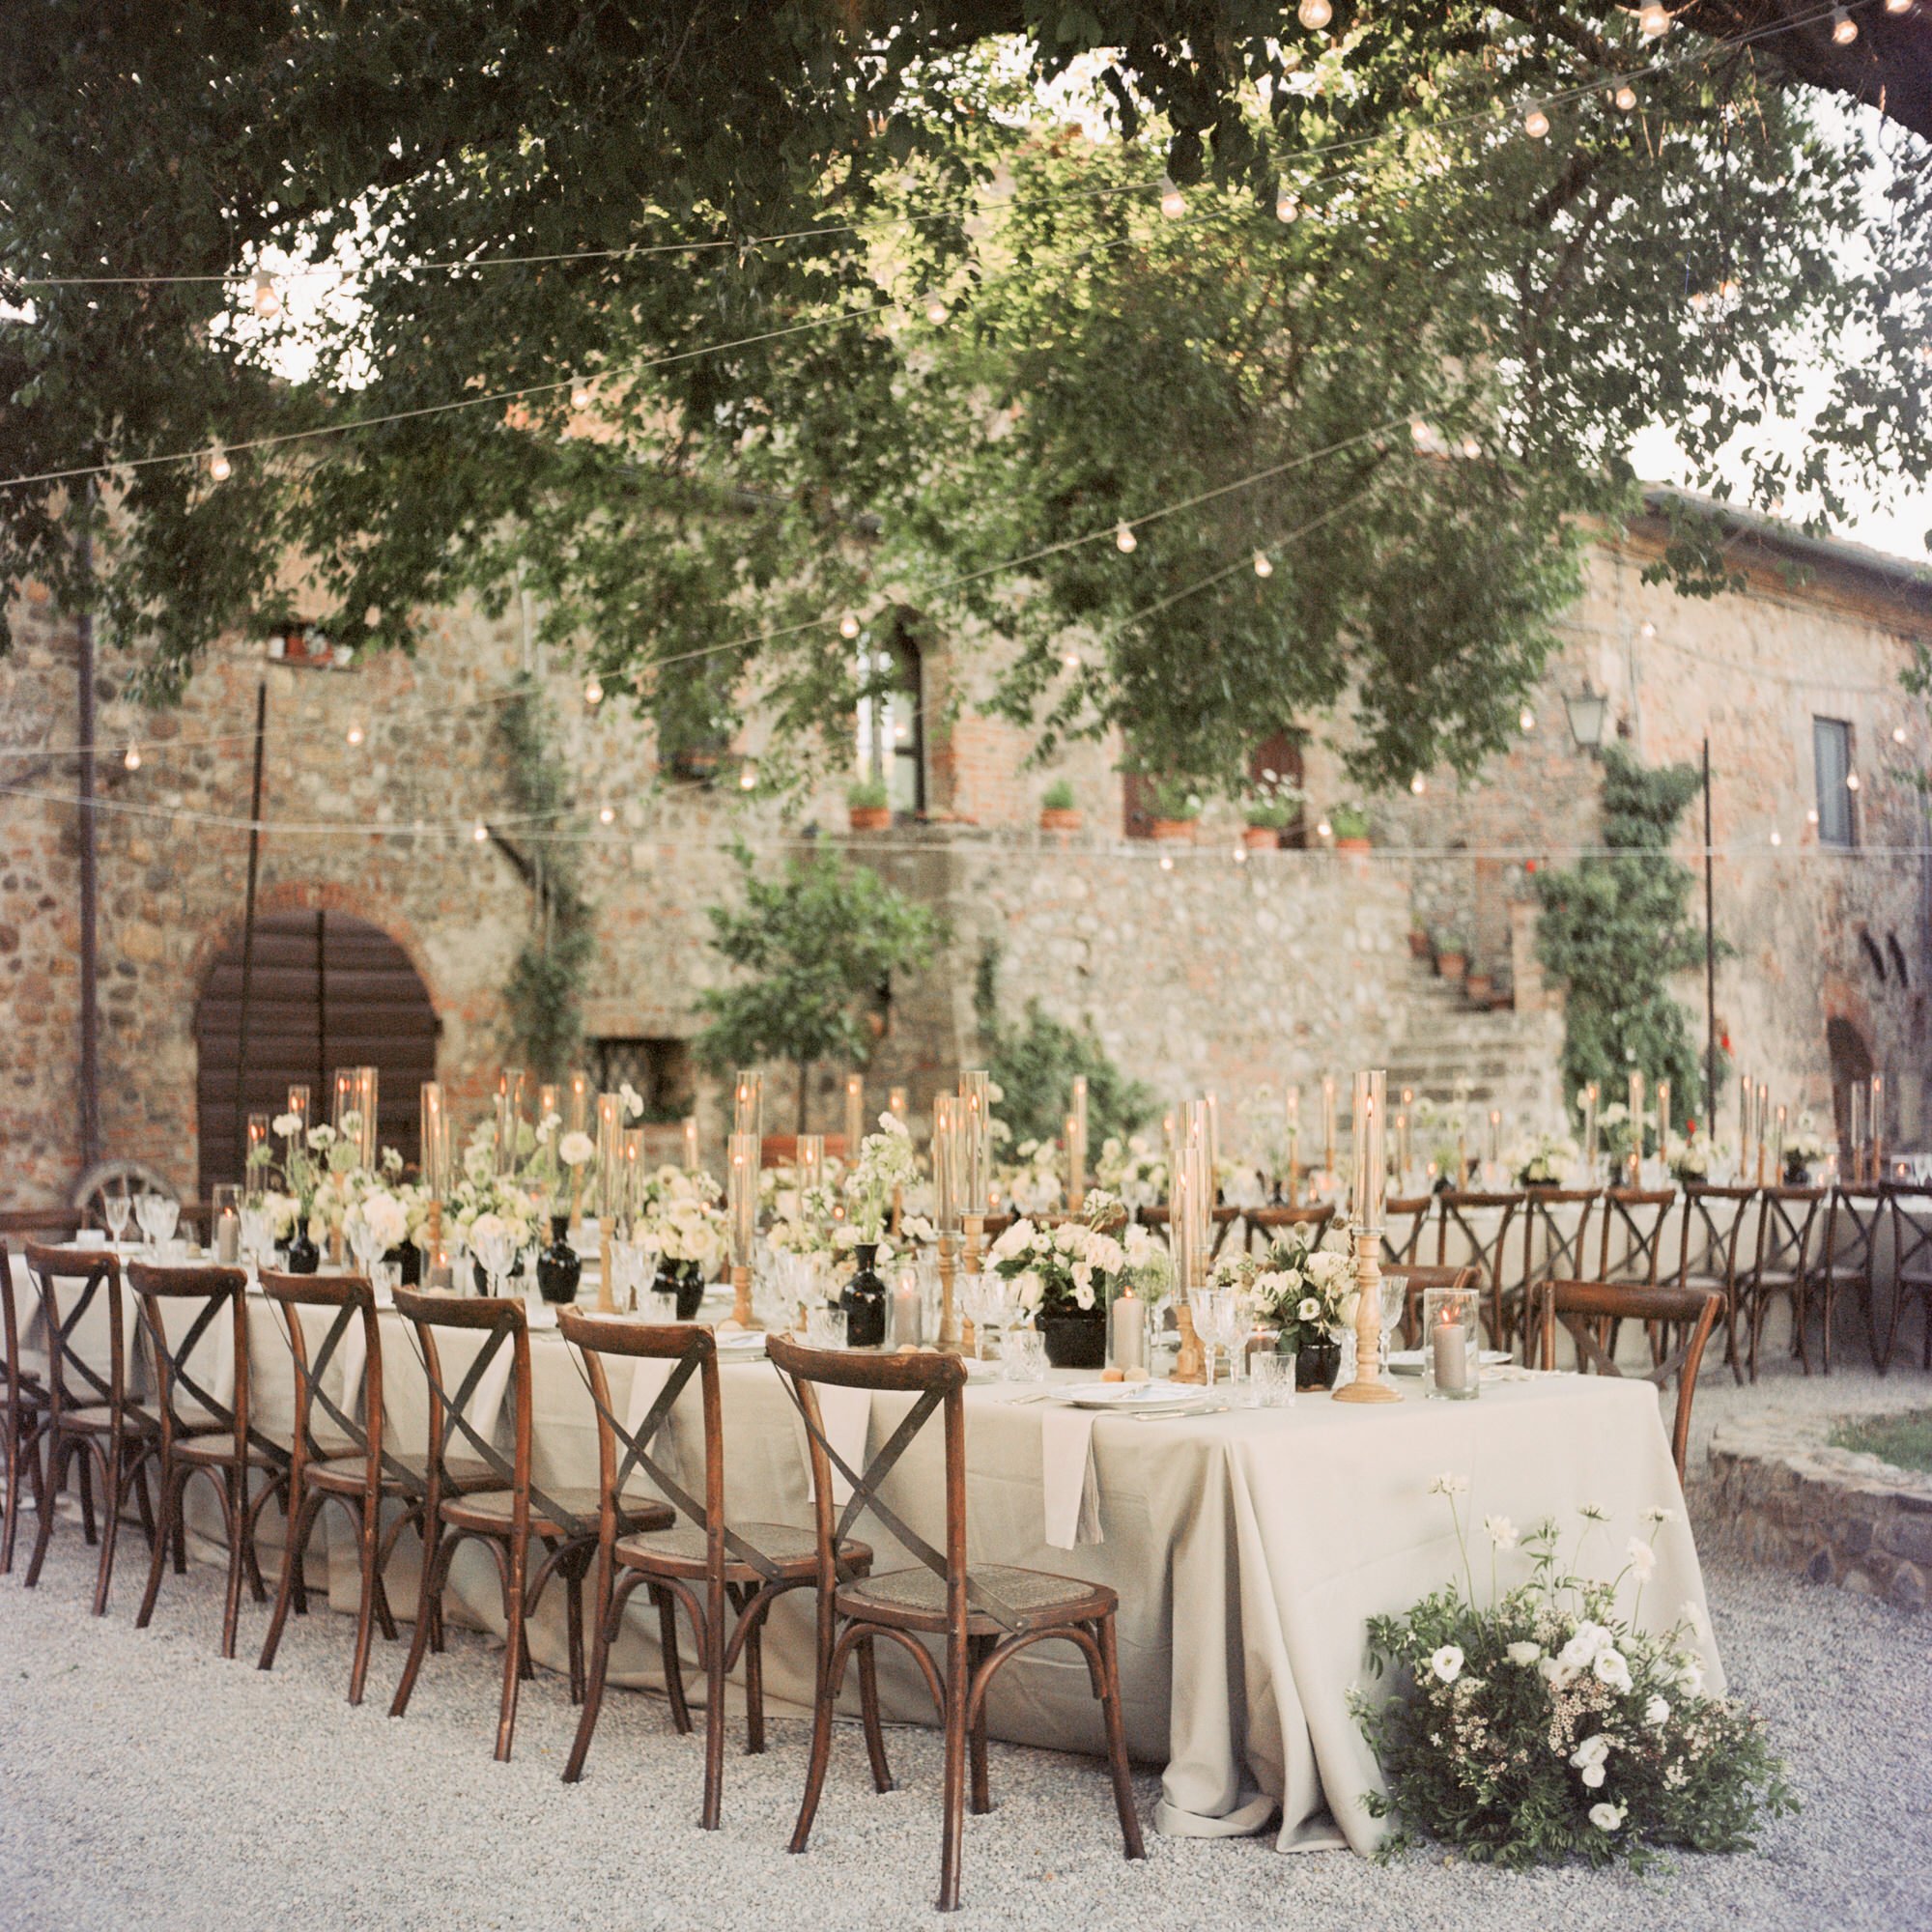 Borgo-di-castelvecchio-wedding1.jpg